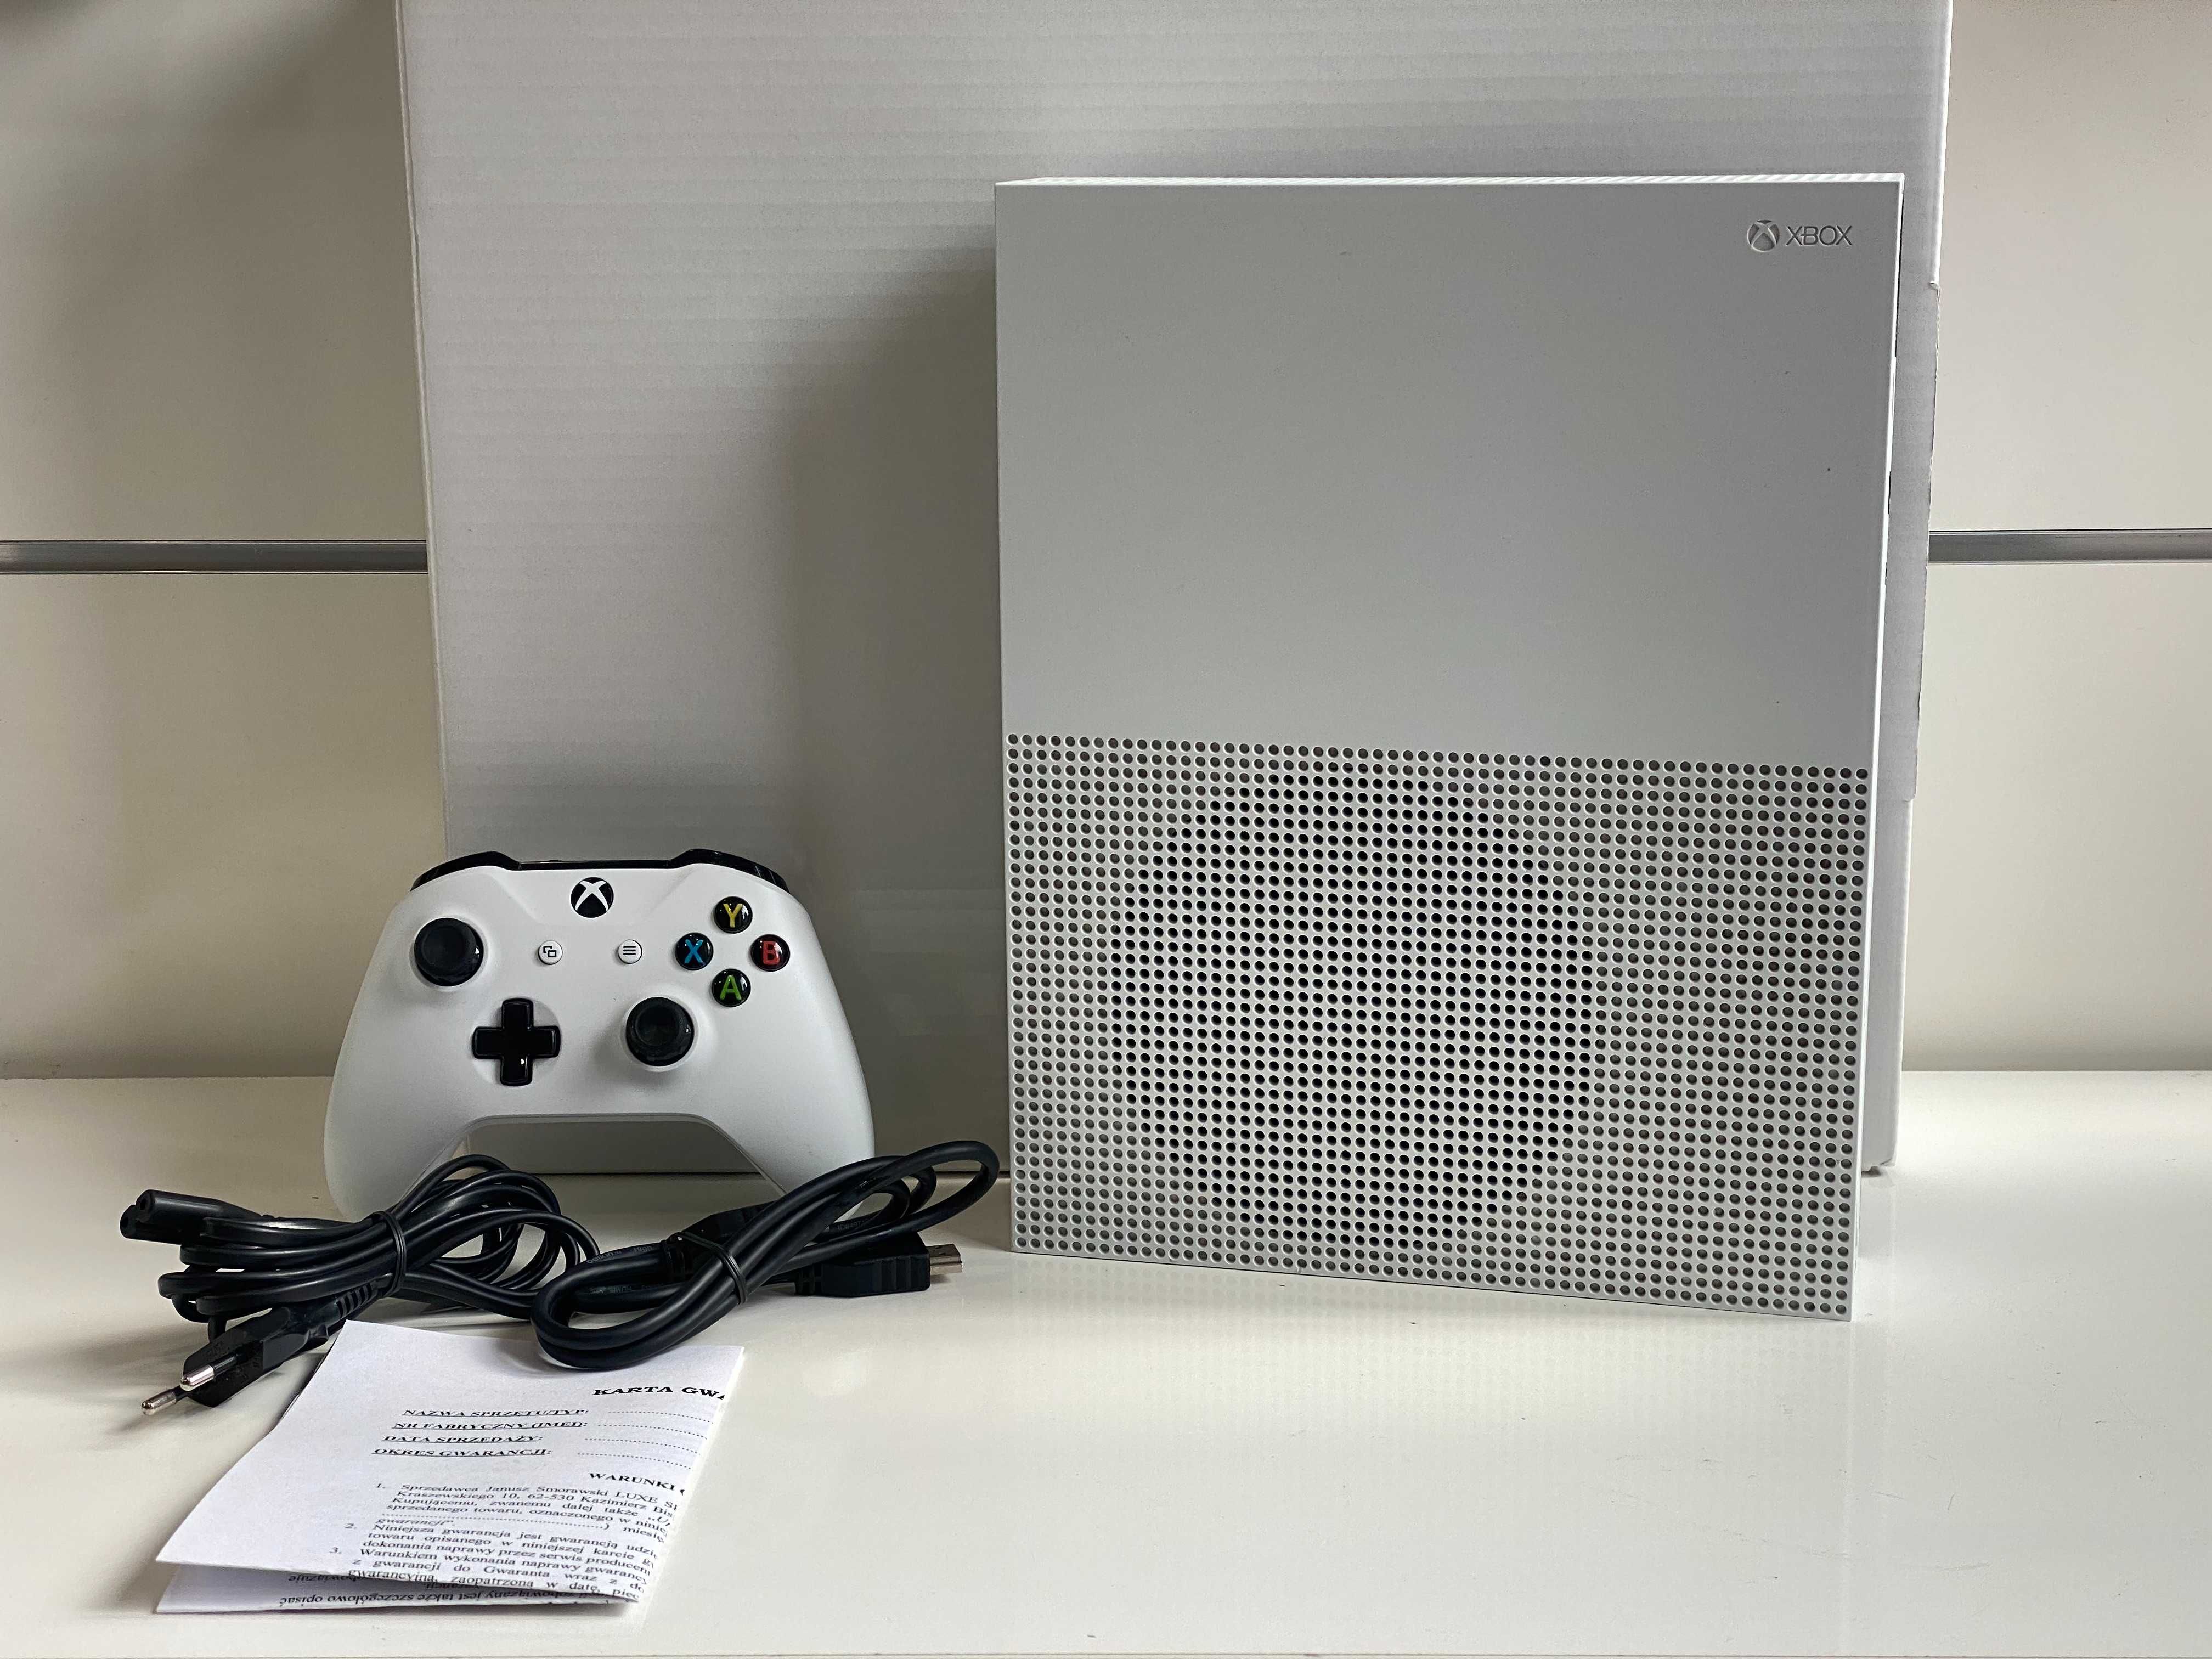 GWARANCJA Microsoft XBOX One S 1000GB Komplet Biała Sklep